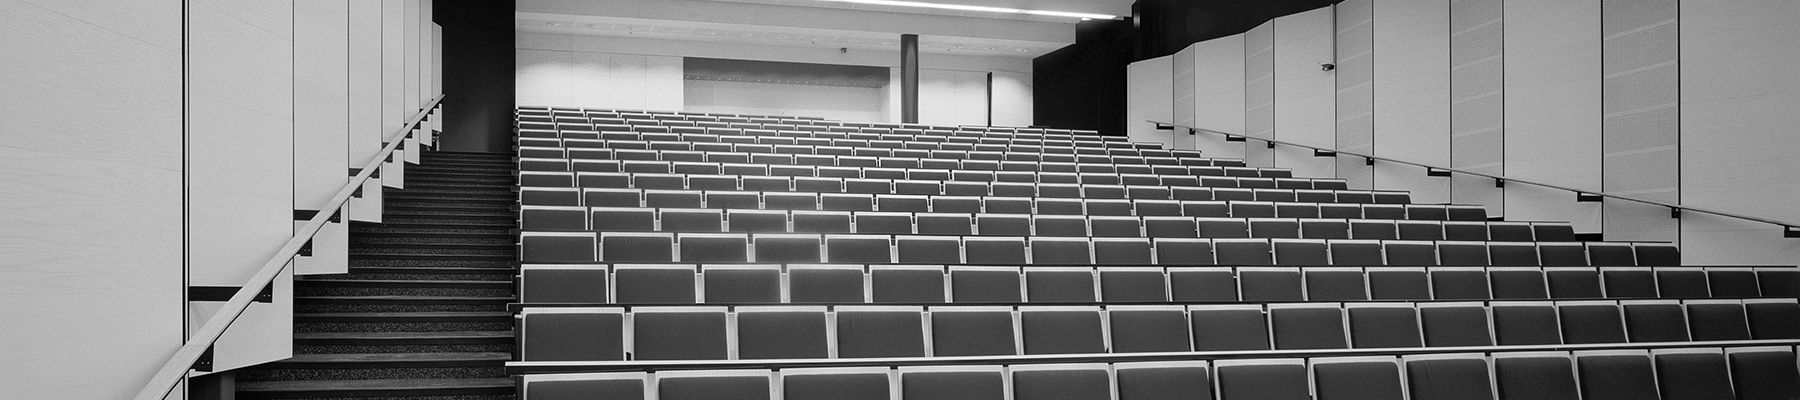 Mustavalkoinen auditorio.